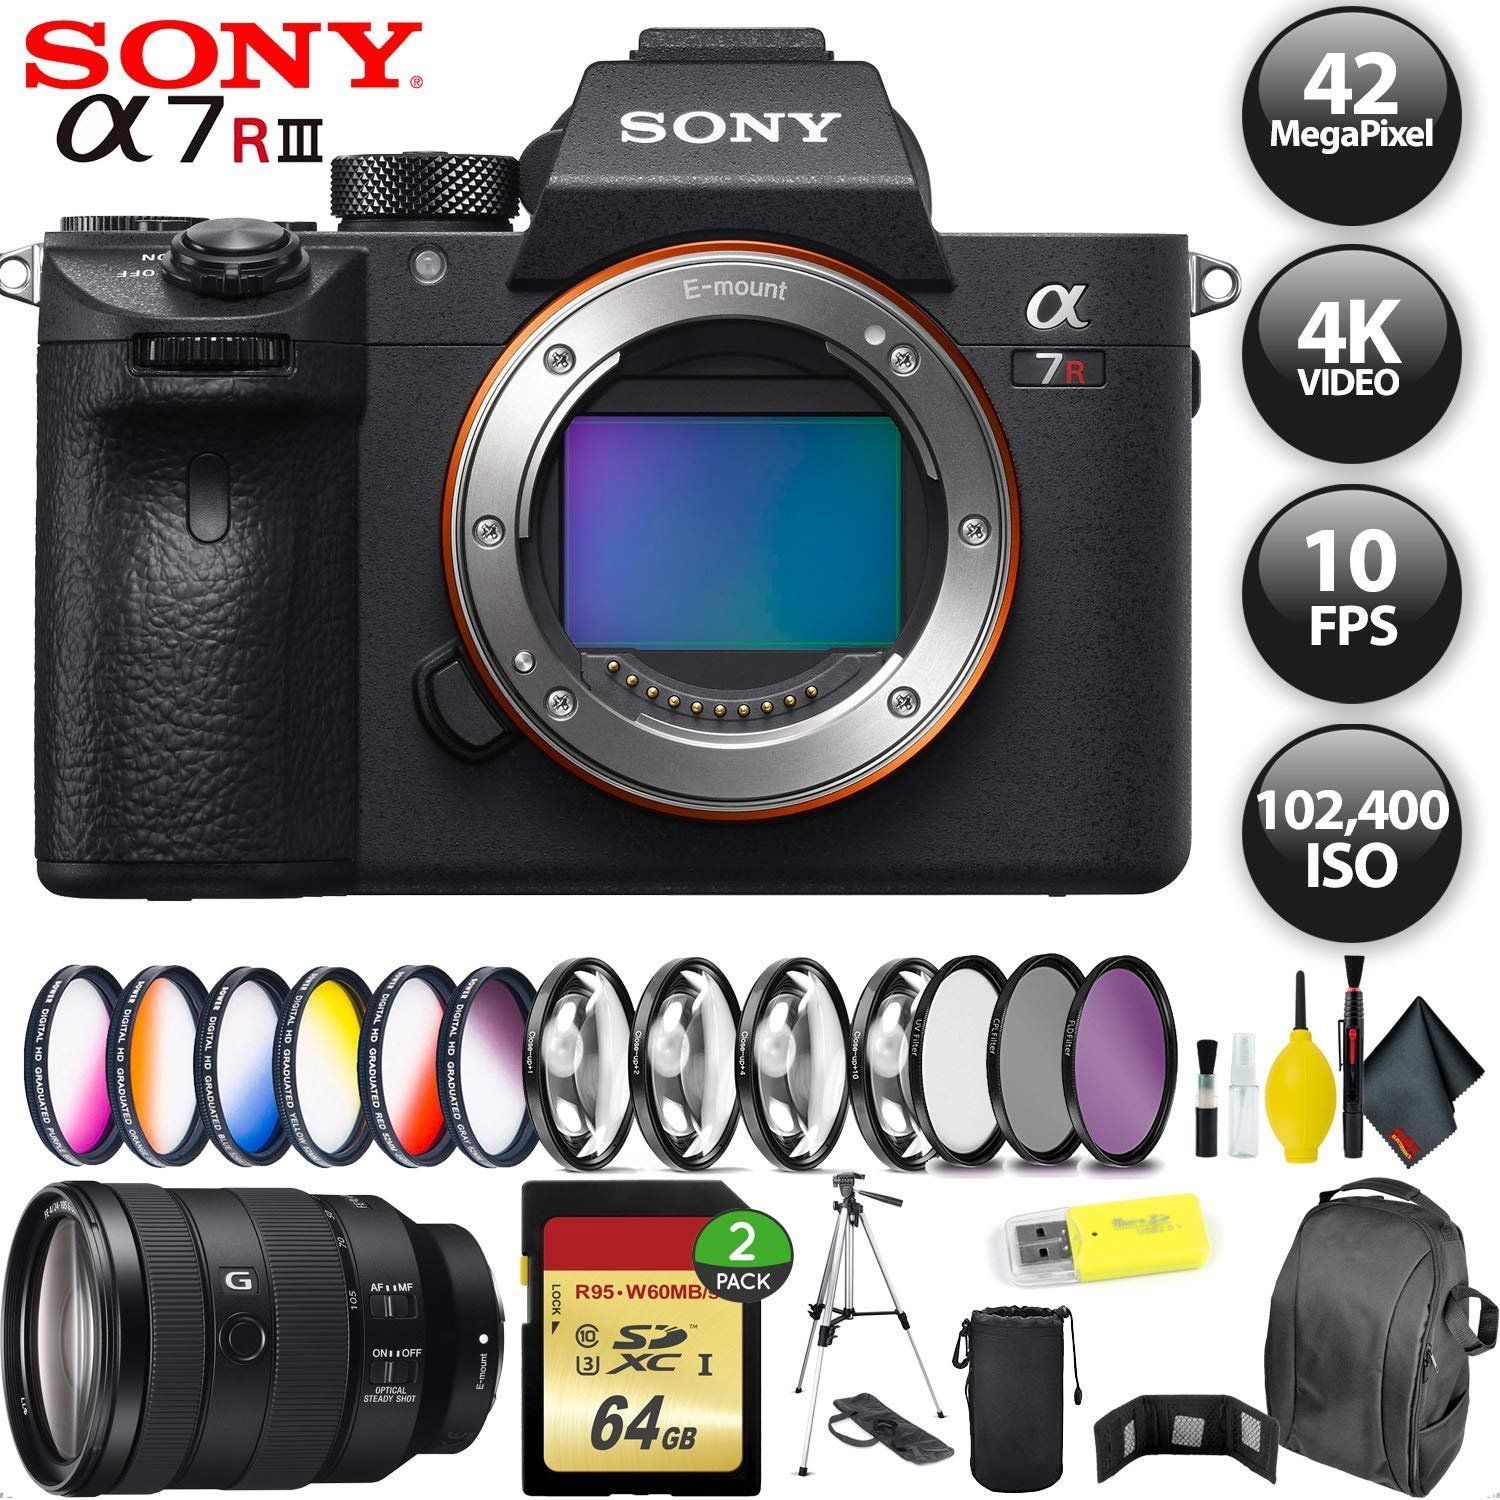 Sony Alpha a7R III Mirrorless Digital Camera + 256GB Memory Card + Sony FE 24-105mm Lens